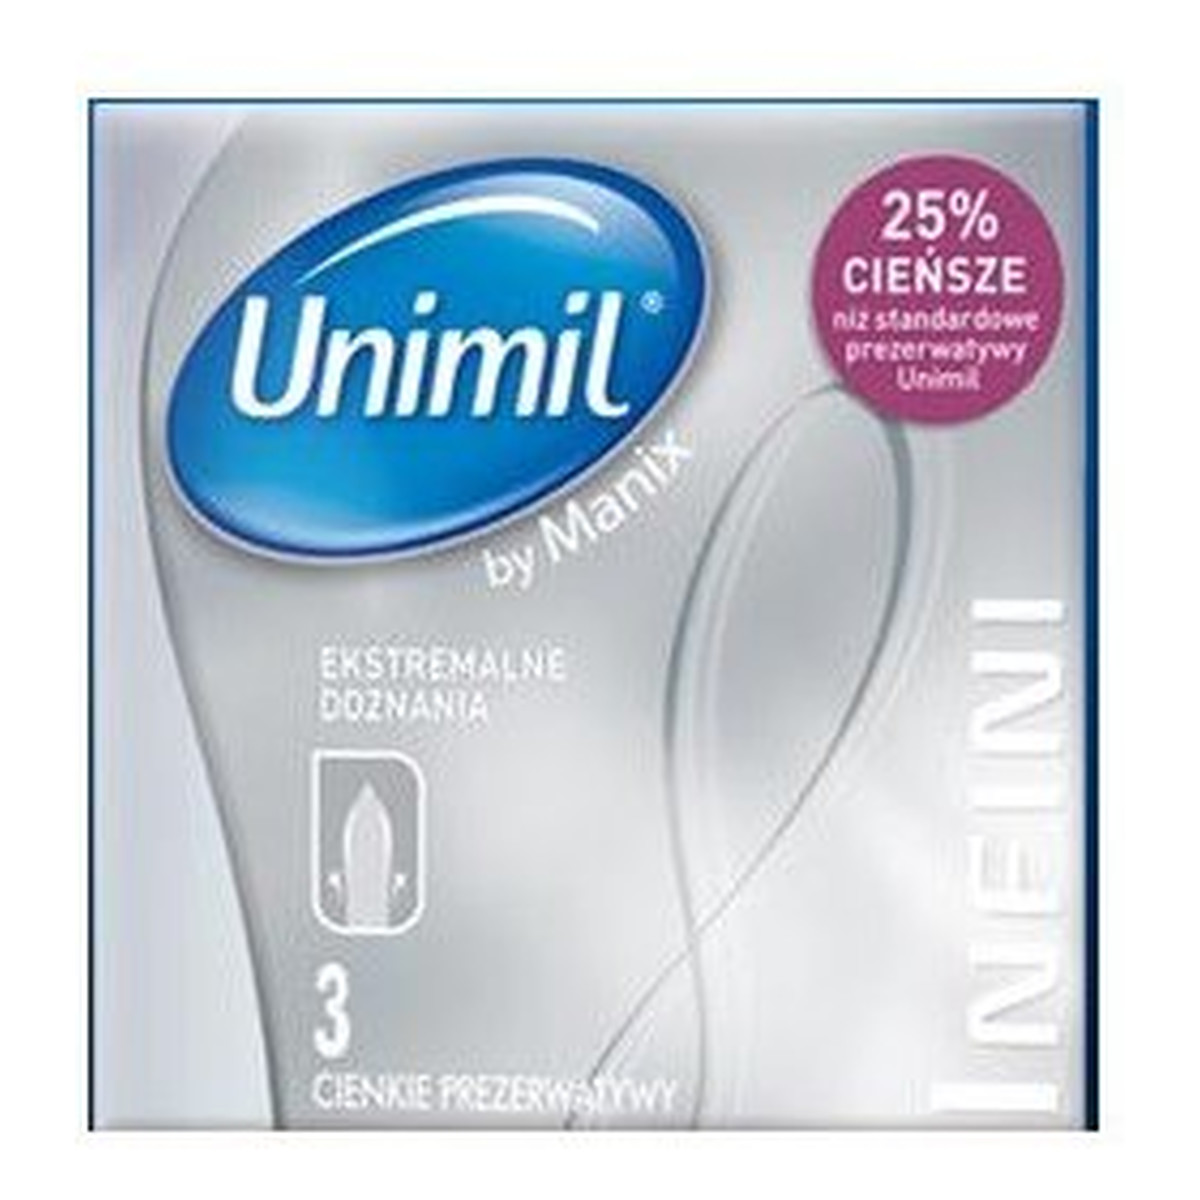 Unimil Infini lateksowe prezerwatywy 3szt